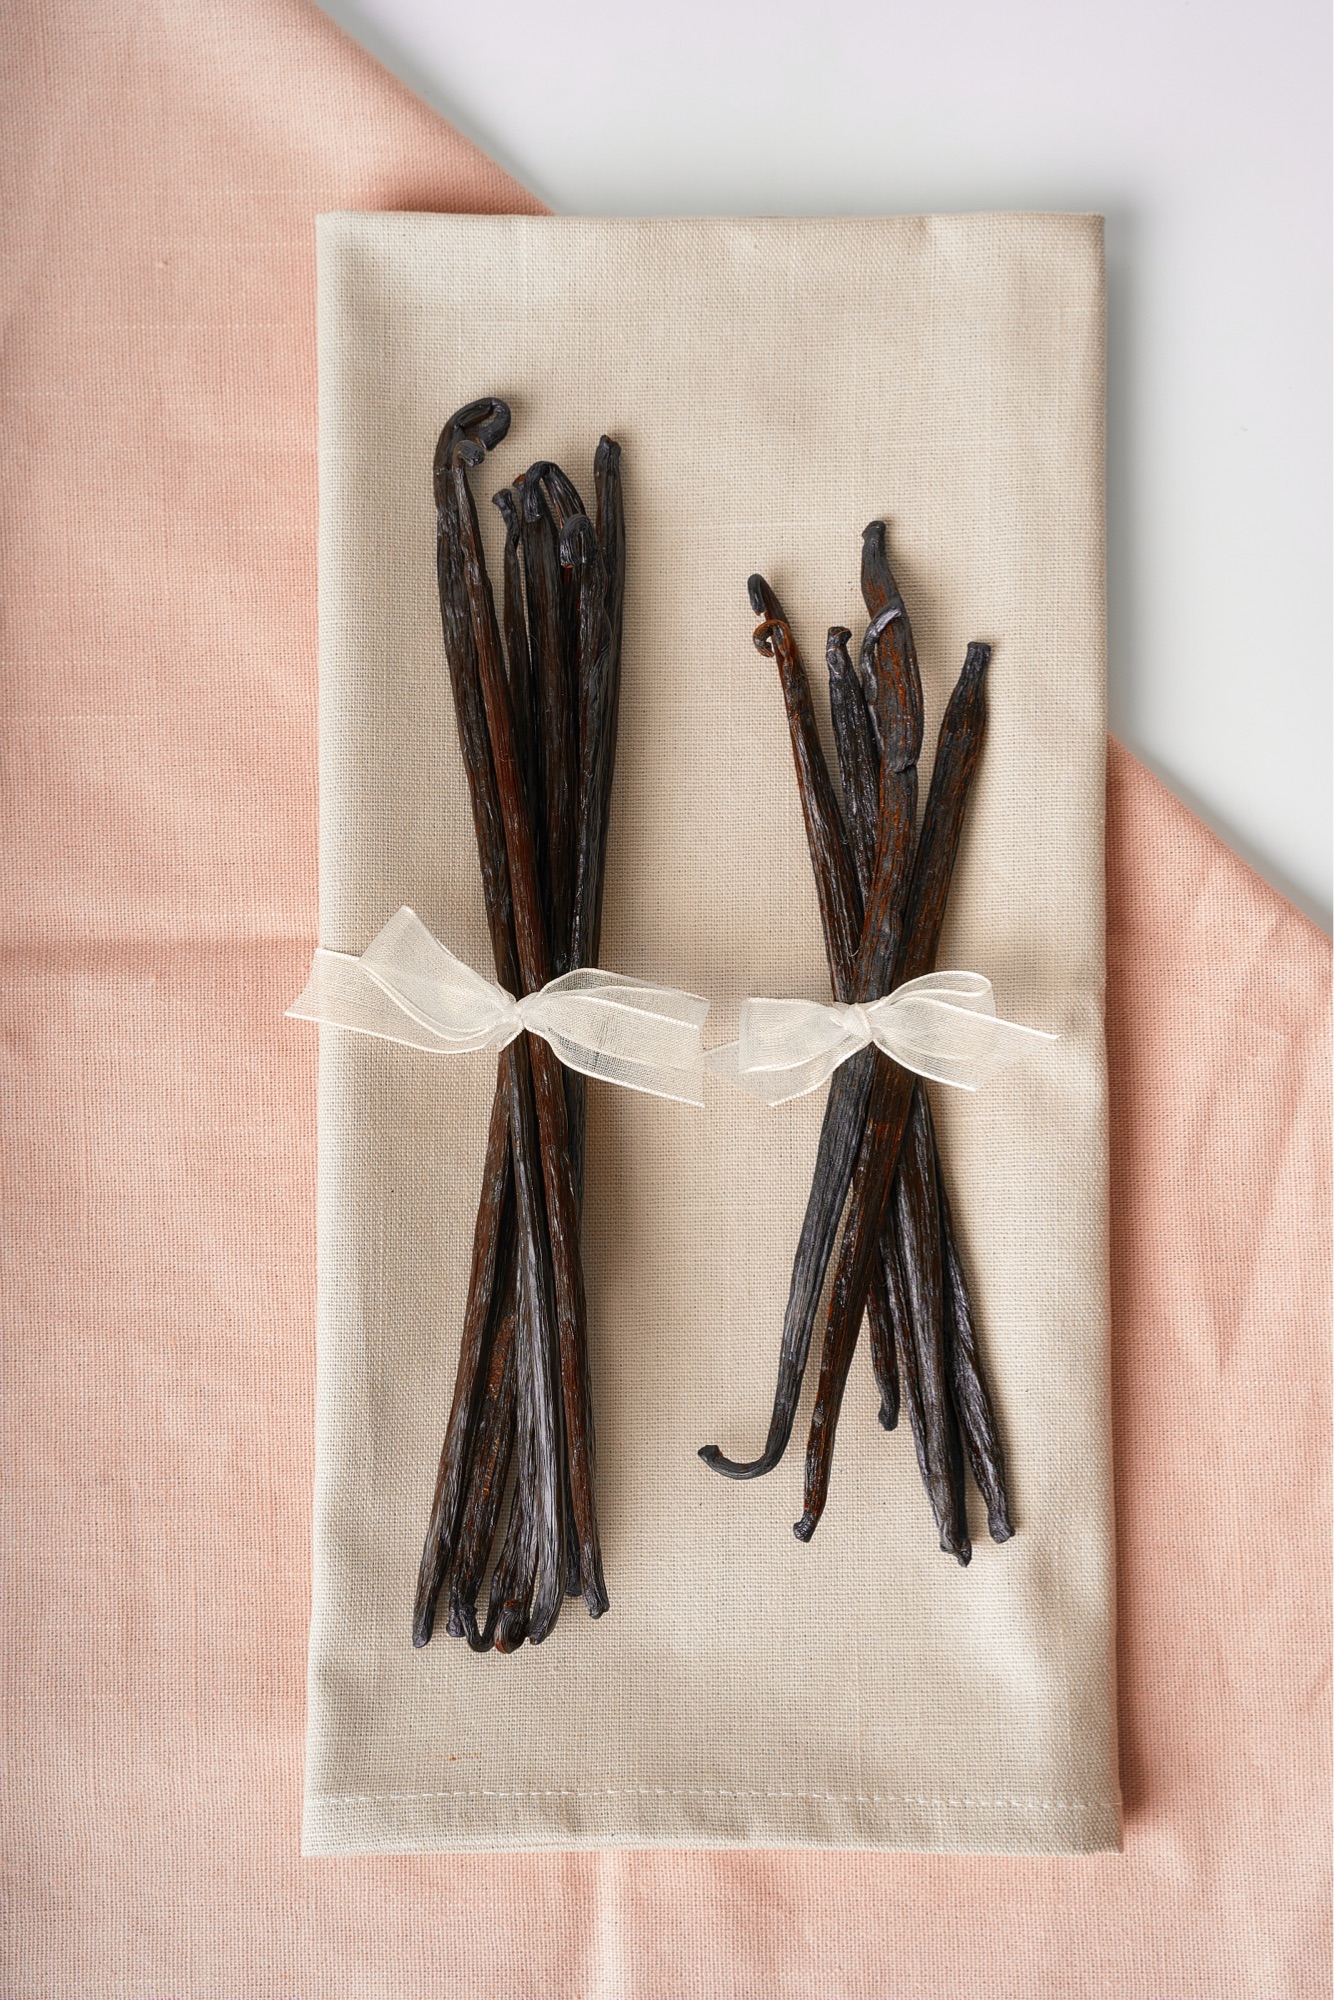 ฝักวานิลา มาดากัสการ์ เกรด A (แพ๊ค 1 ฝัก) Madagascar Vanilla bean